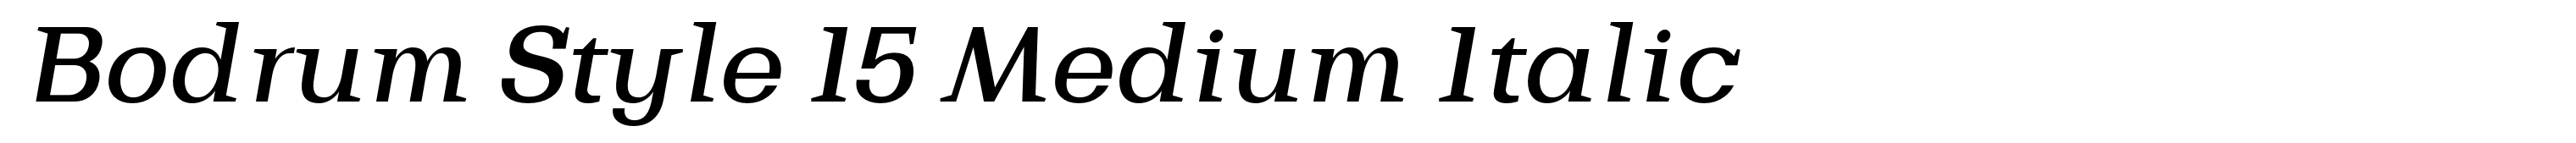 Bodrum Style 15 Medium Italic